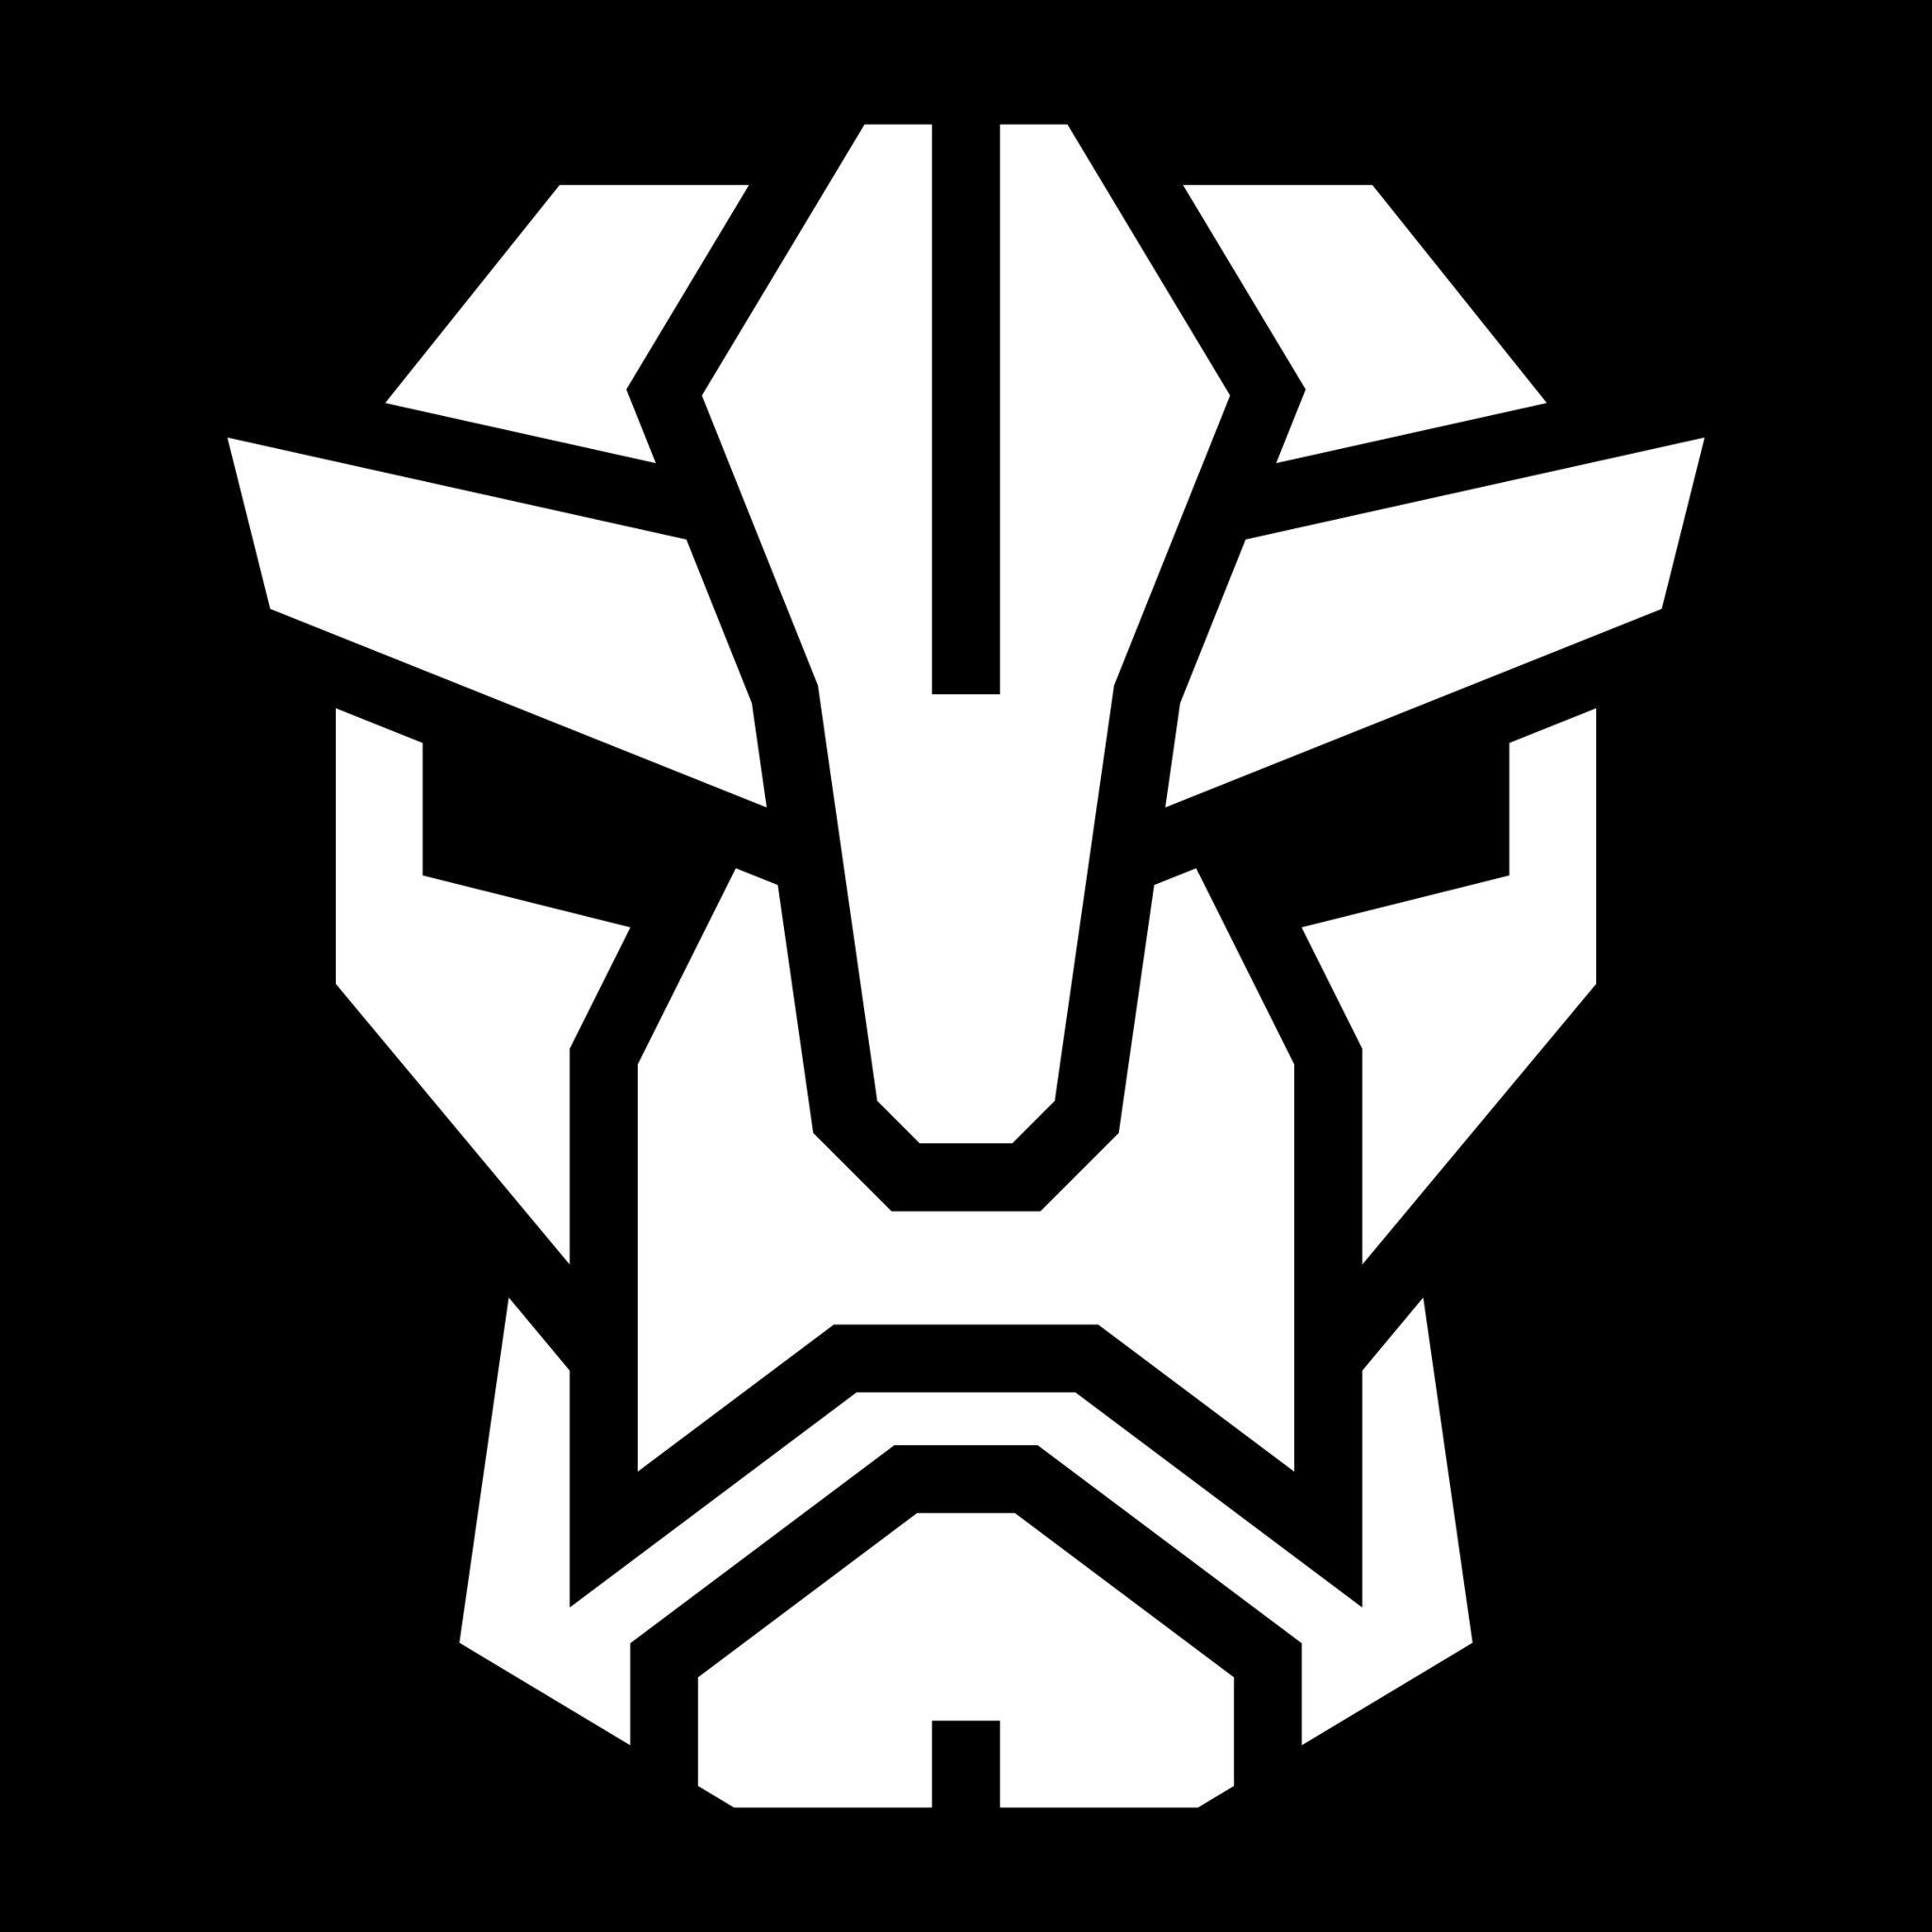 mecha mask icon